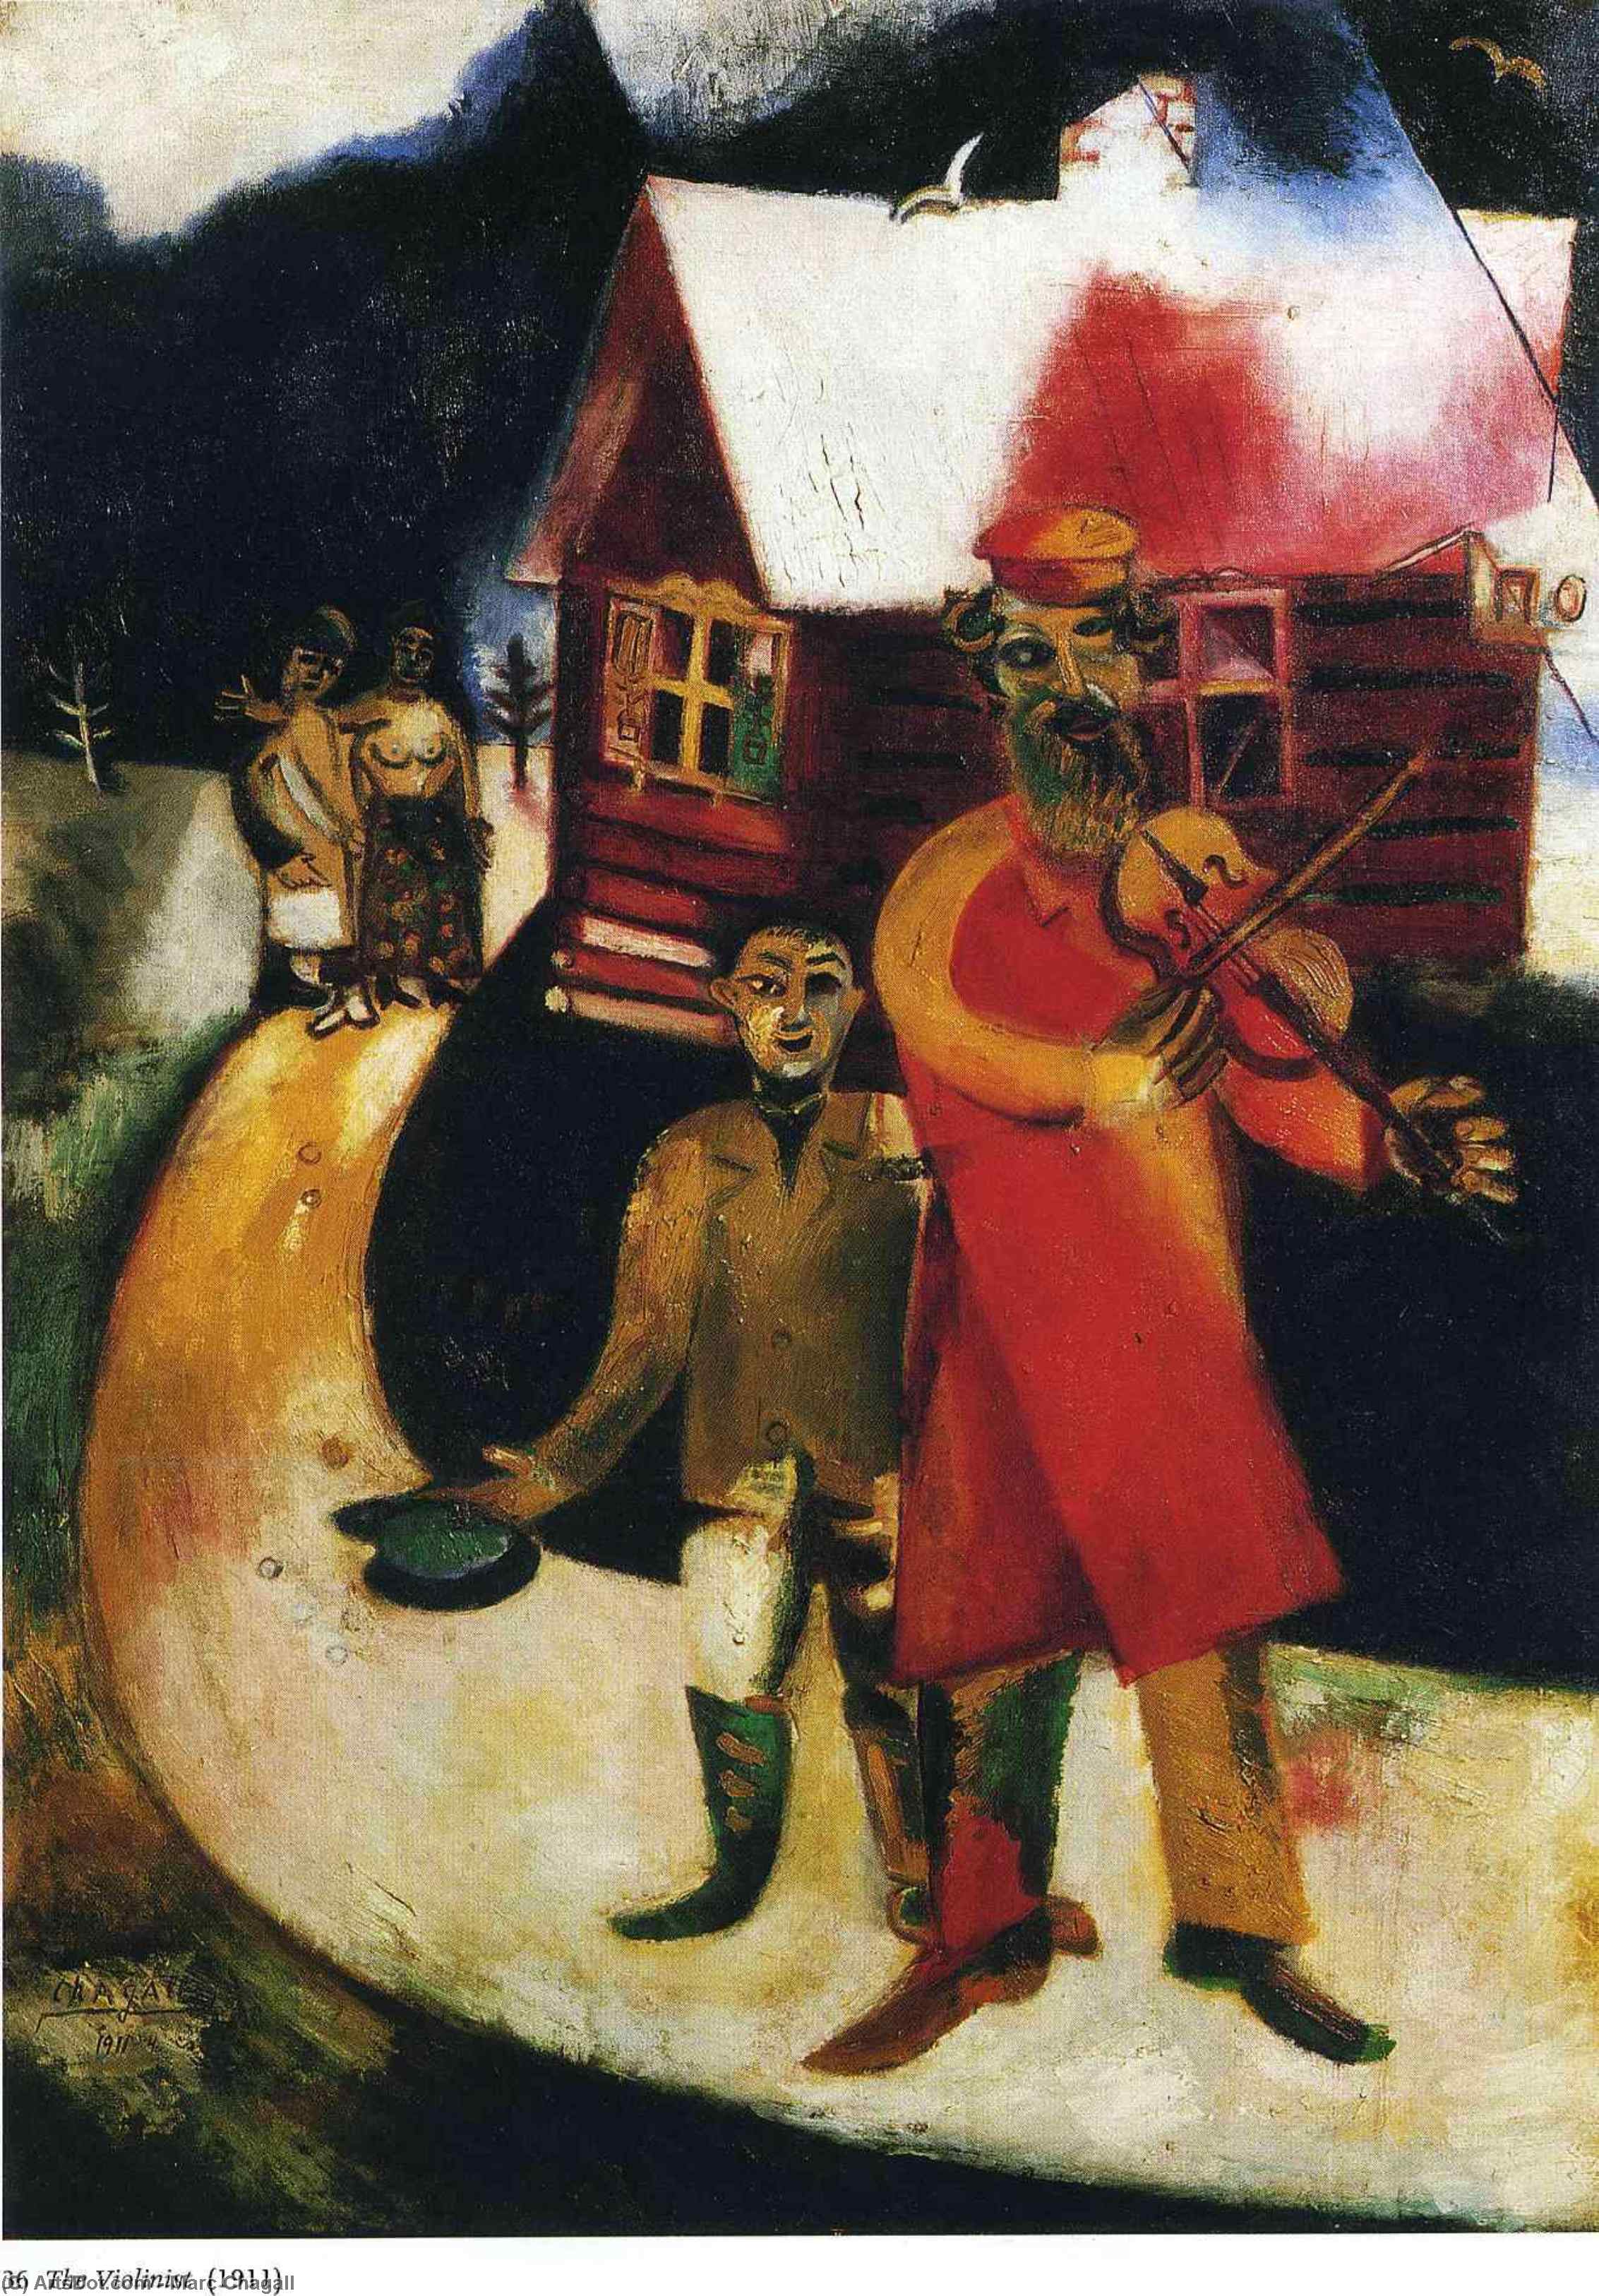 Wikioo.org - Bách khoa toàn thư về mỹ thuật - Vẽ tranh, Tác phẩm nghệ thuật Marc Chagall - The Fiddler